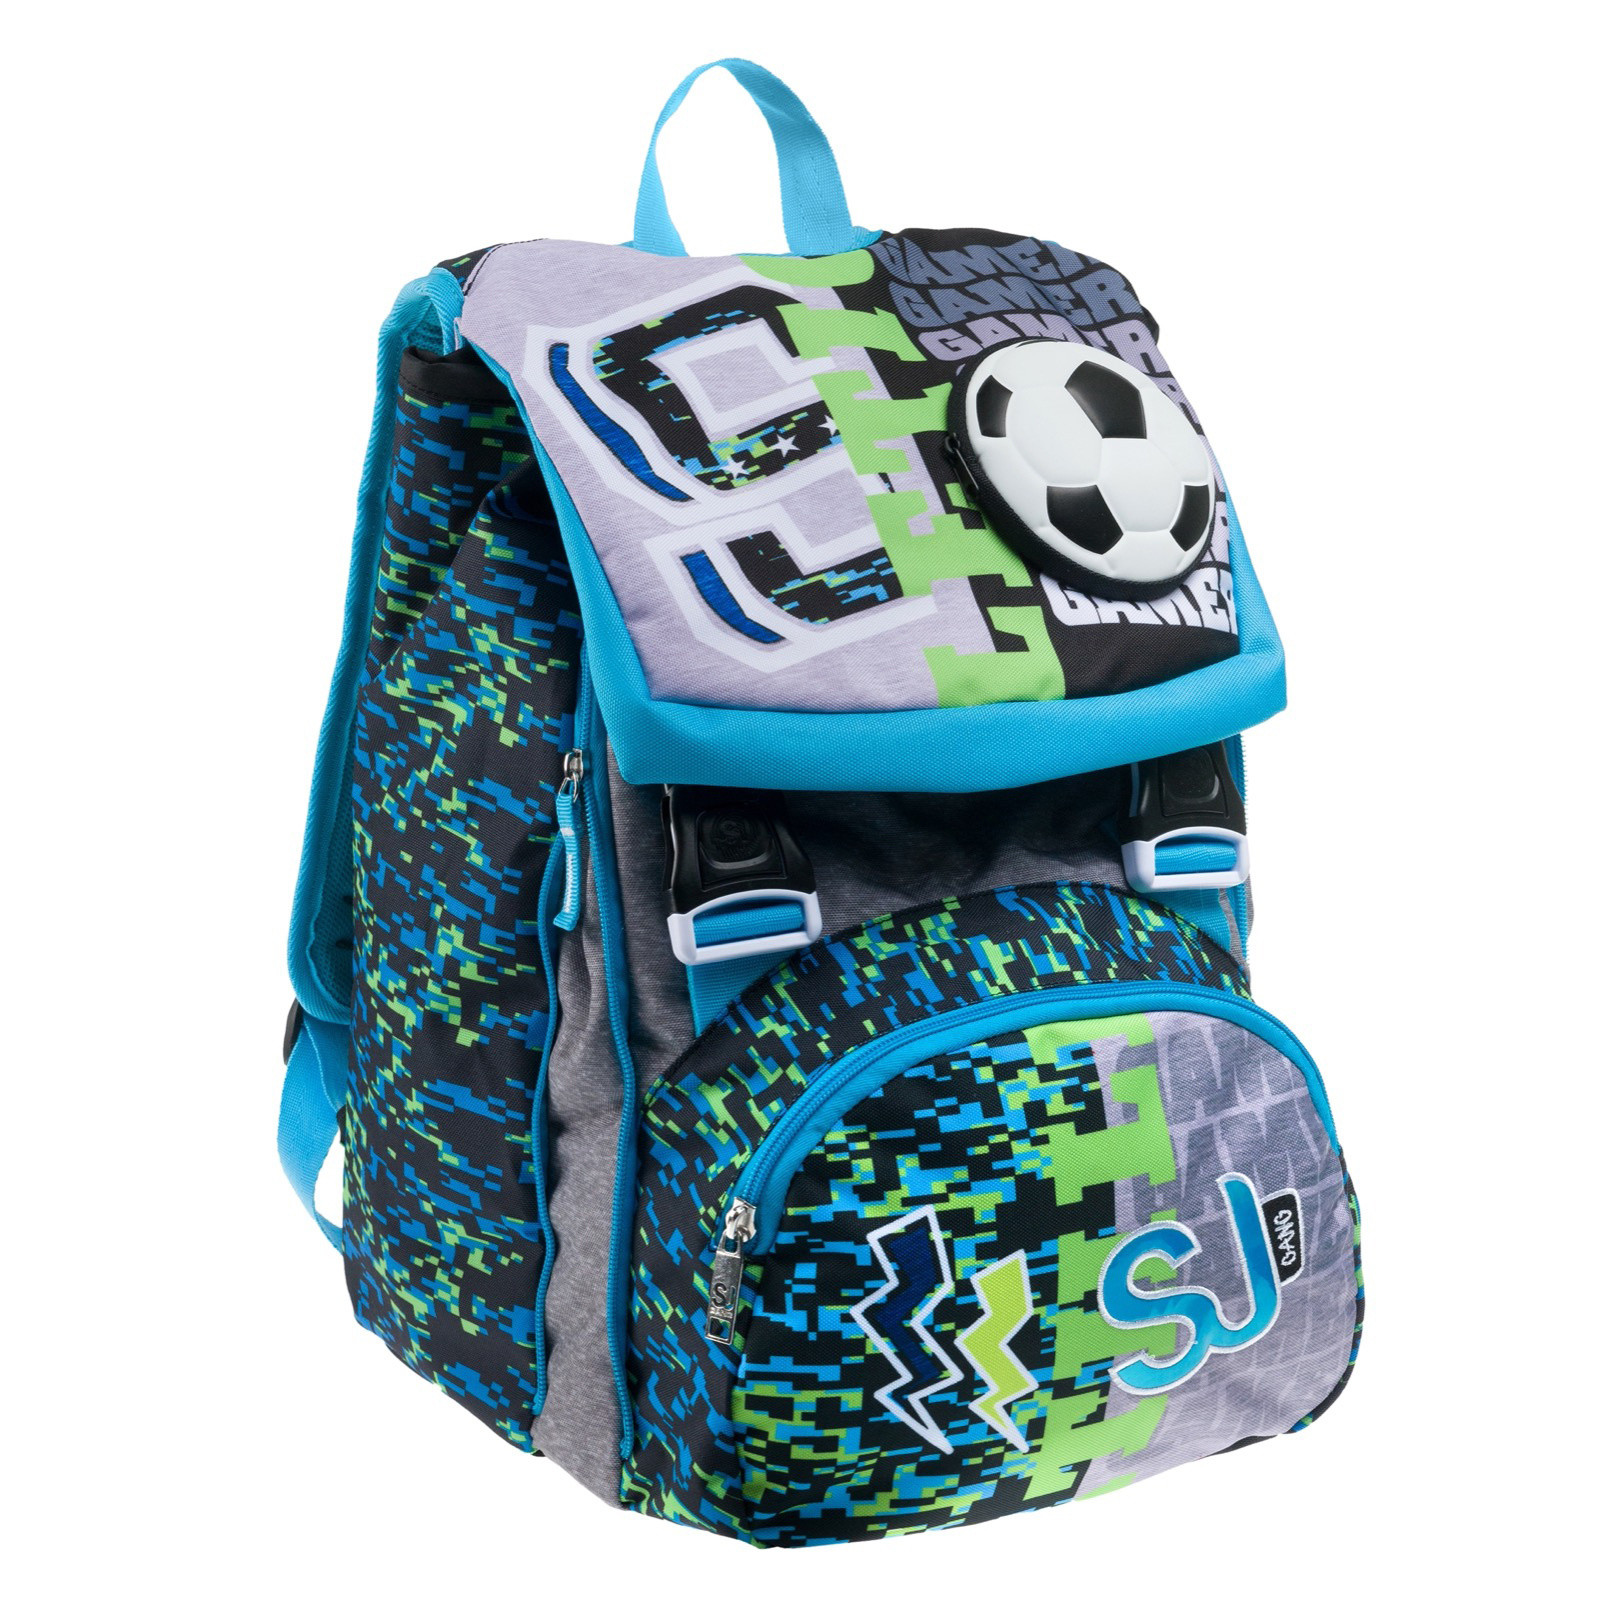 Backpack extensible sj gang goalkick boy, Light Blue, large image number 0